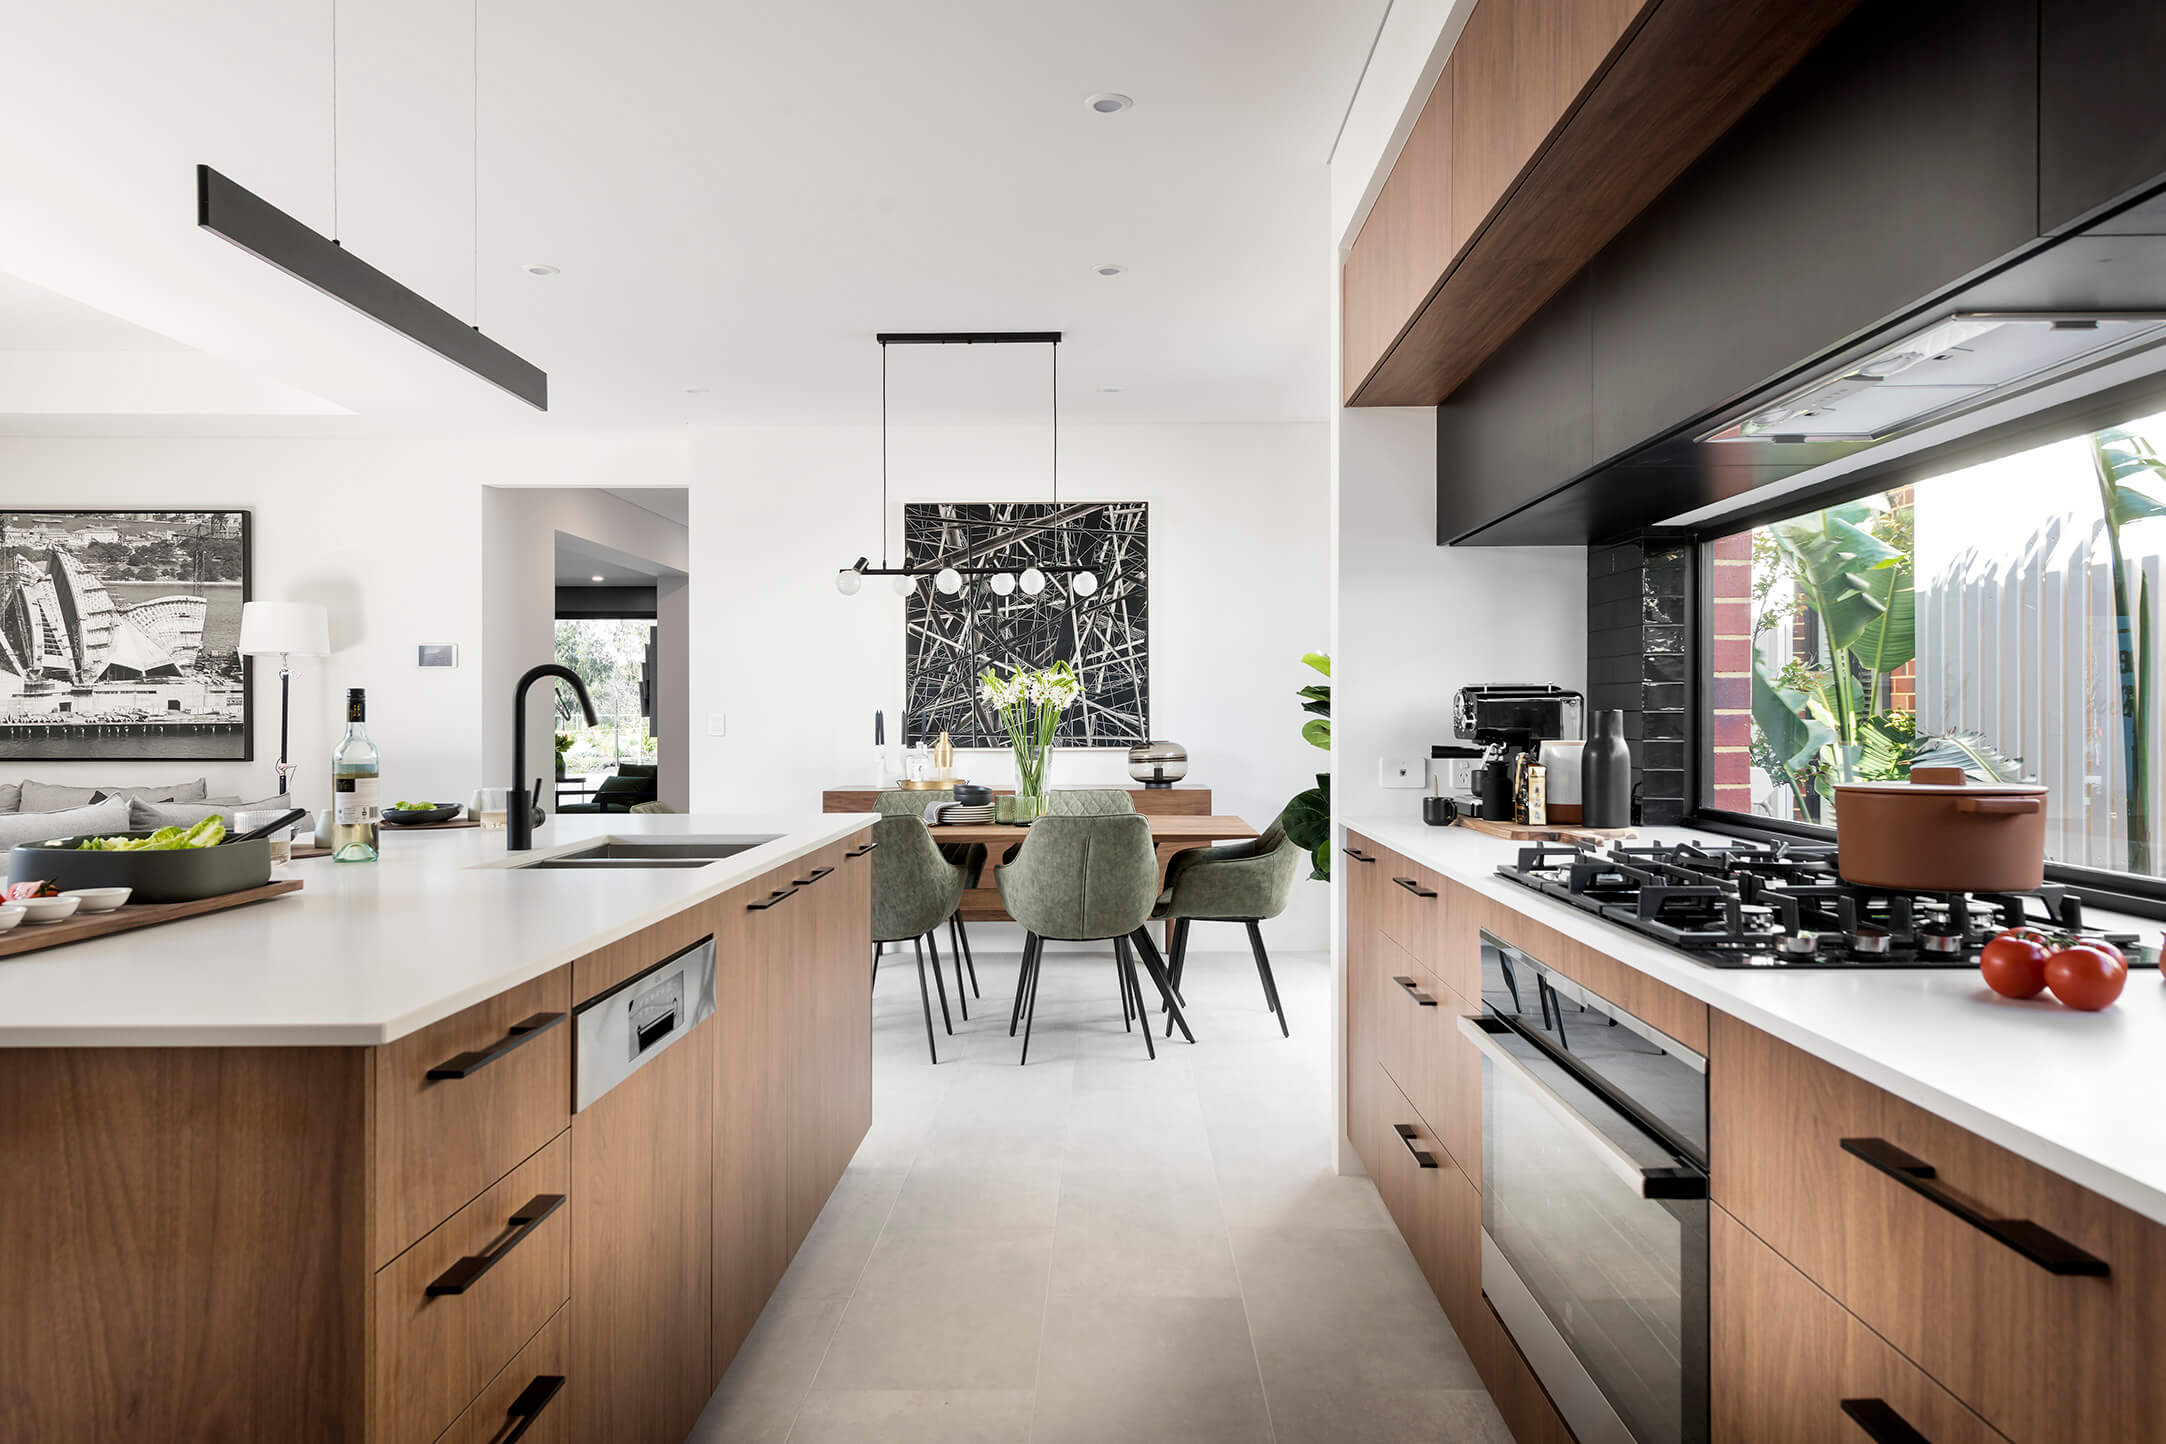 home interior design idea for kitchen